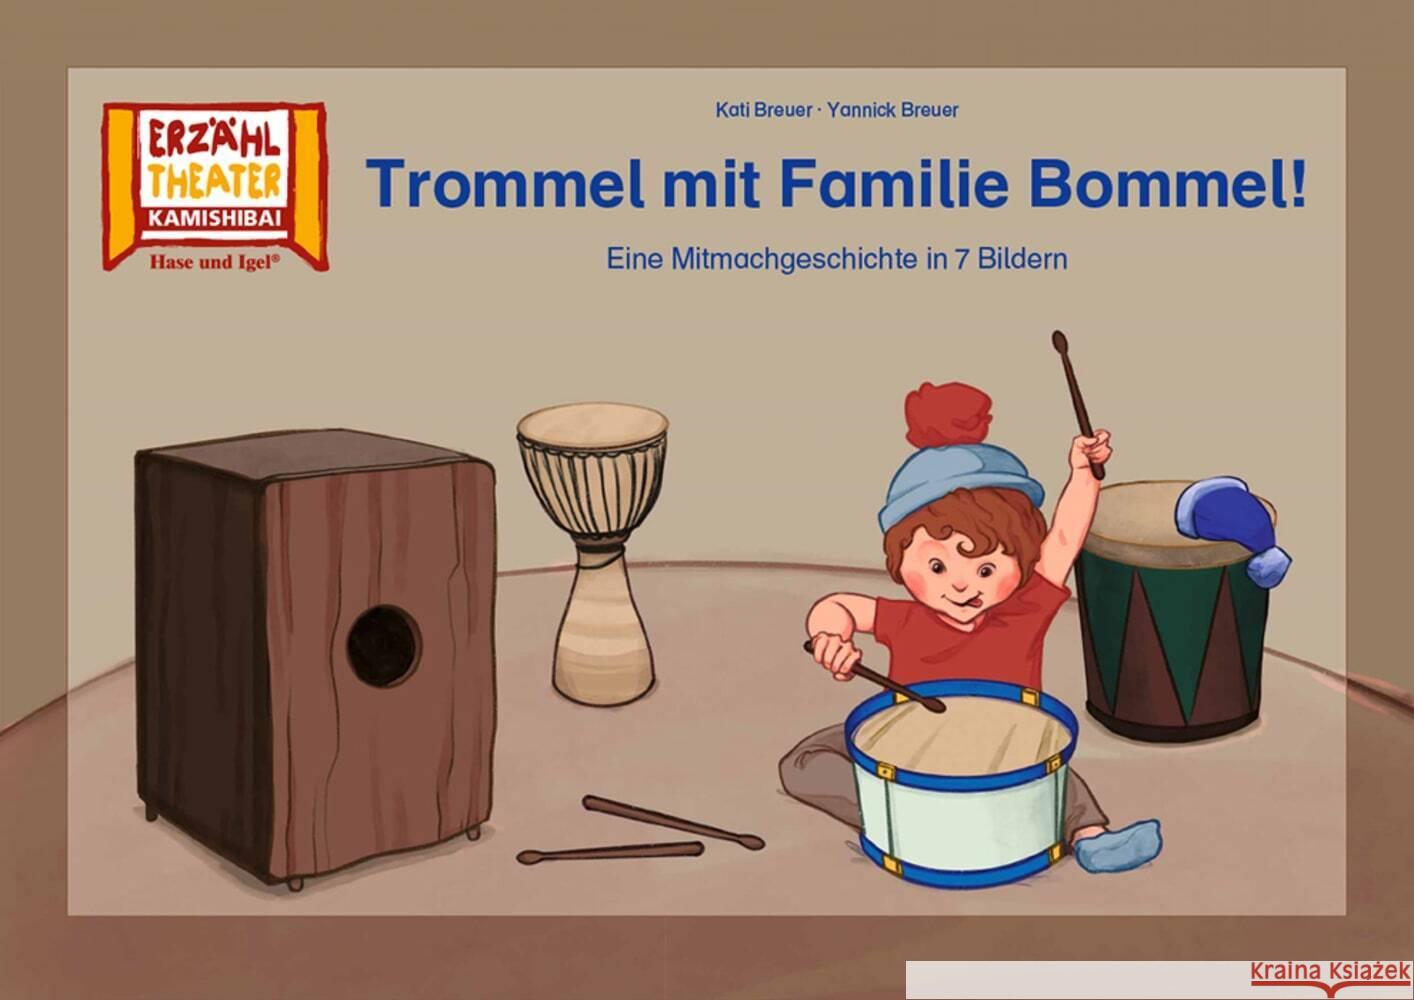 Trommel mit Familie Bommel! / Kamishibai Bildkarten Breuer, Kati, Breuer, Yannick 4260505832544